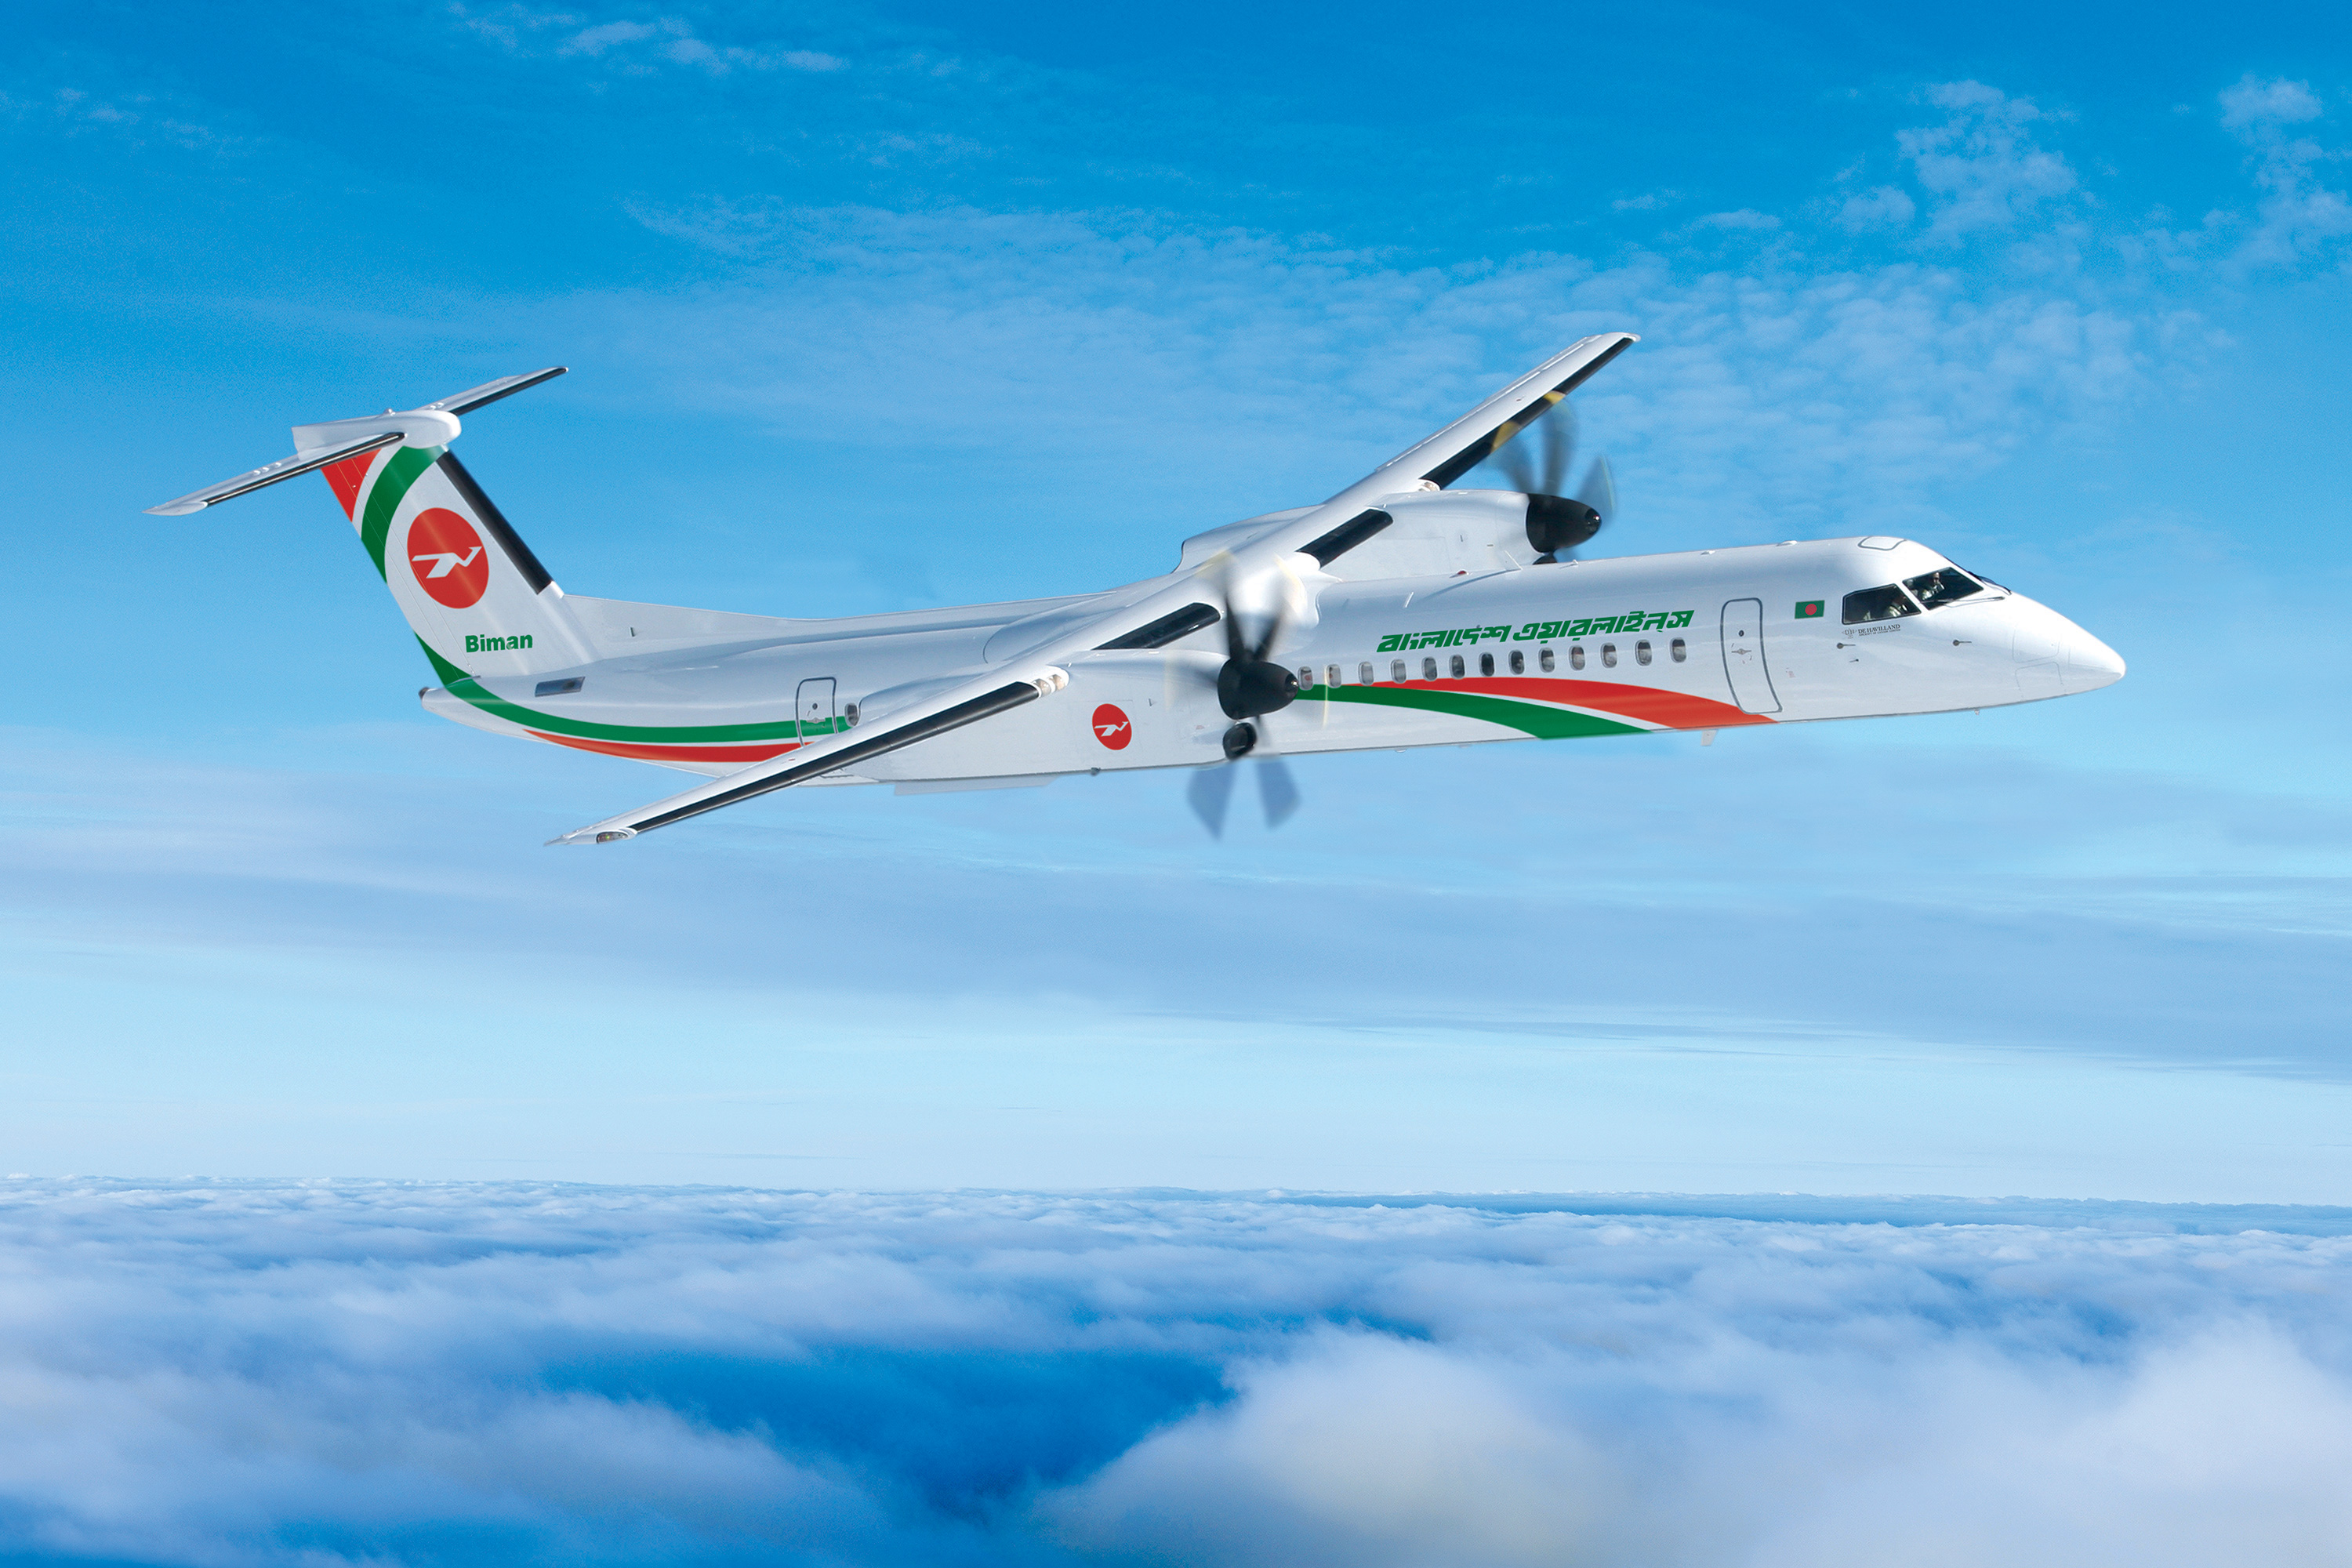 De Havilland Canada delivers Dash 8-400 to Biman Bangladesh Airlines